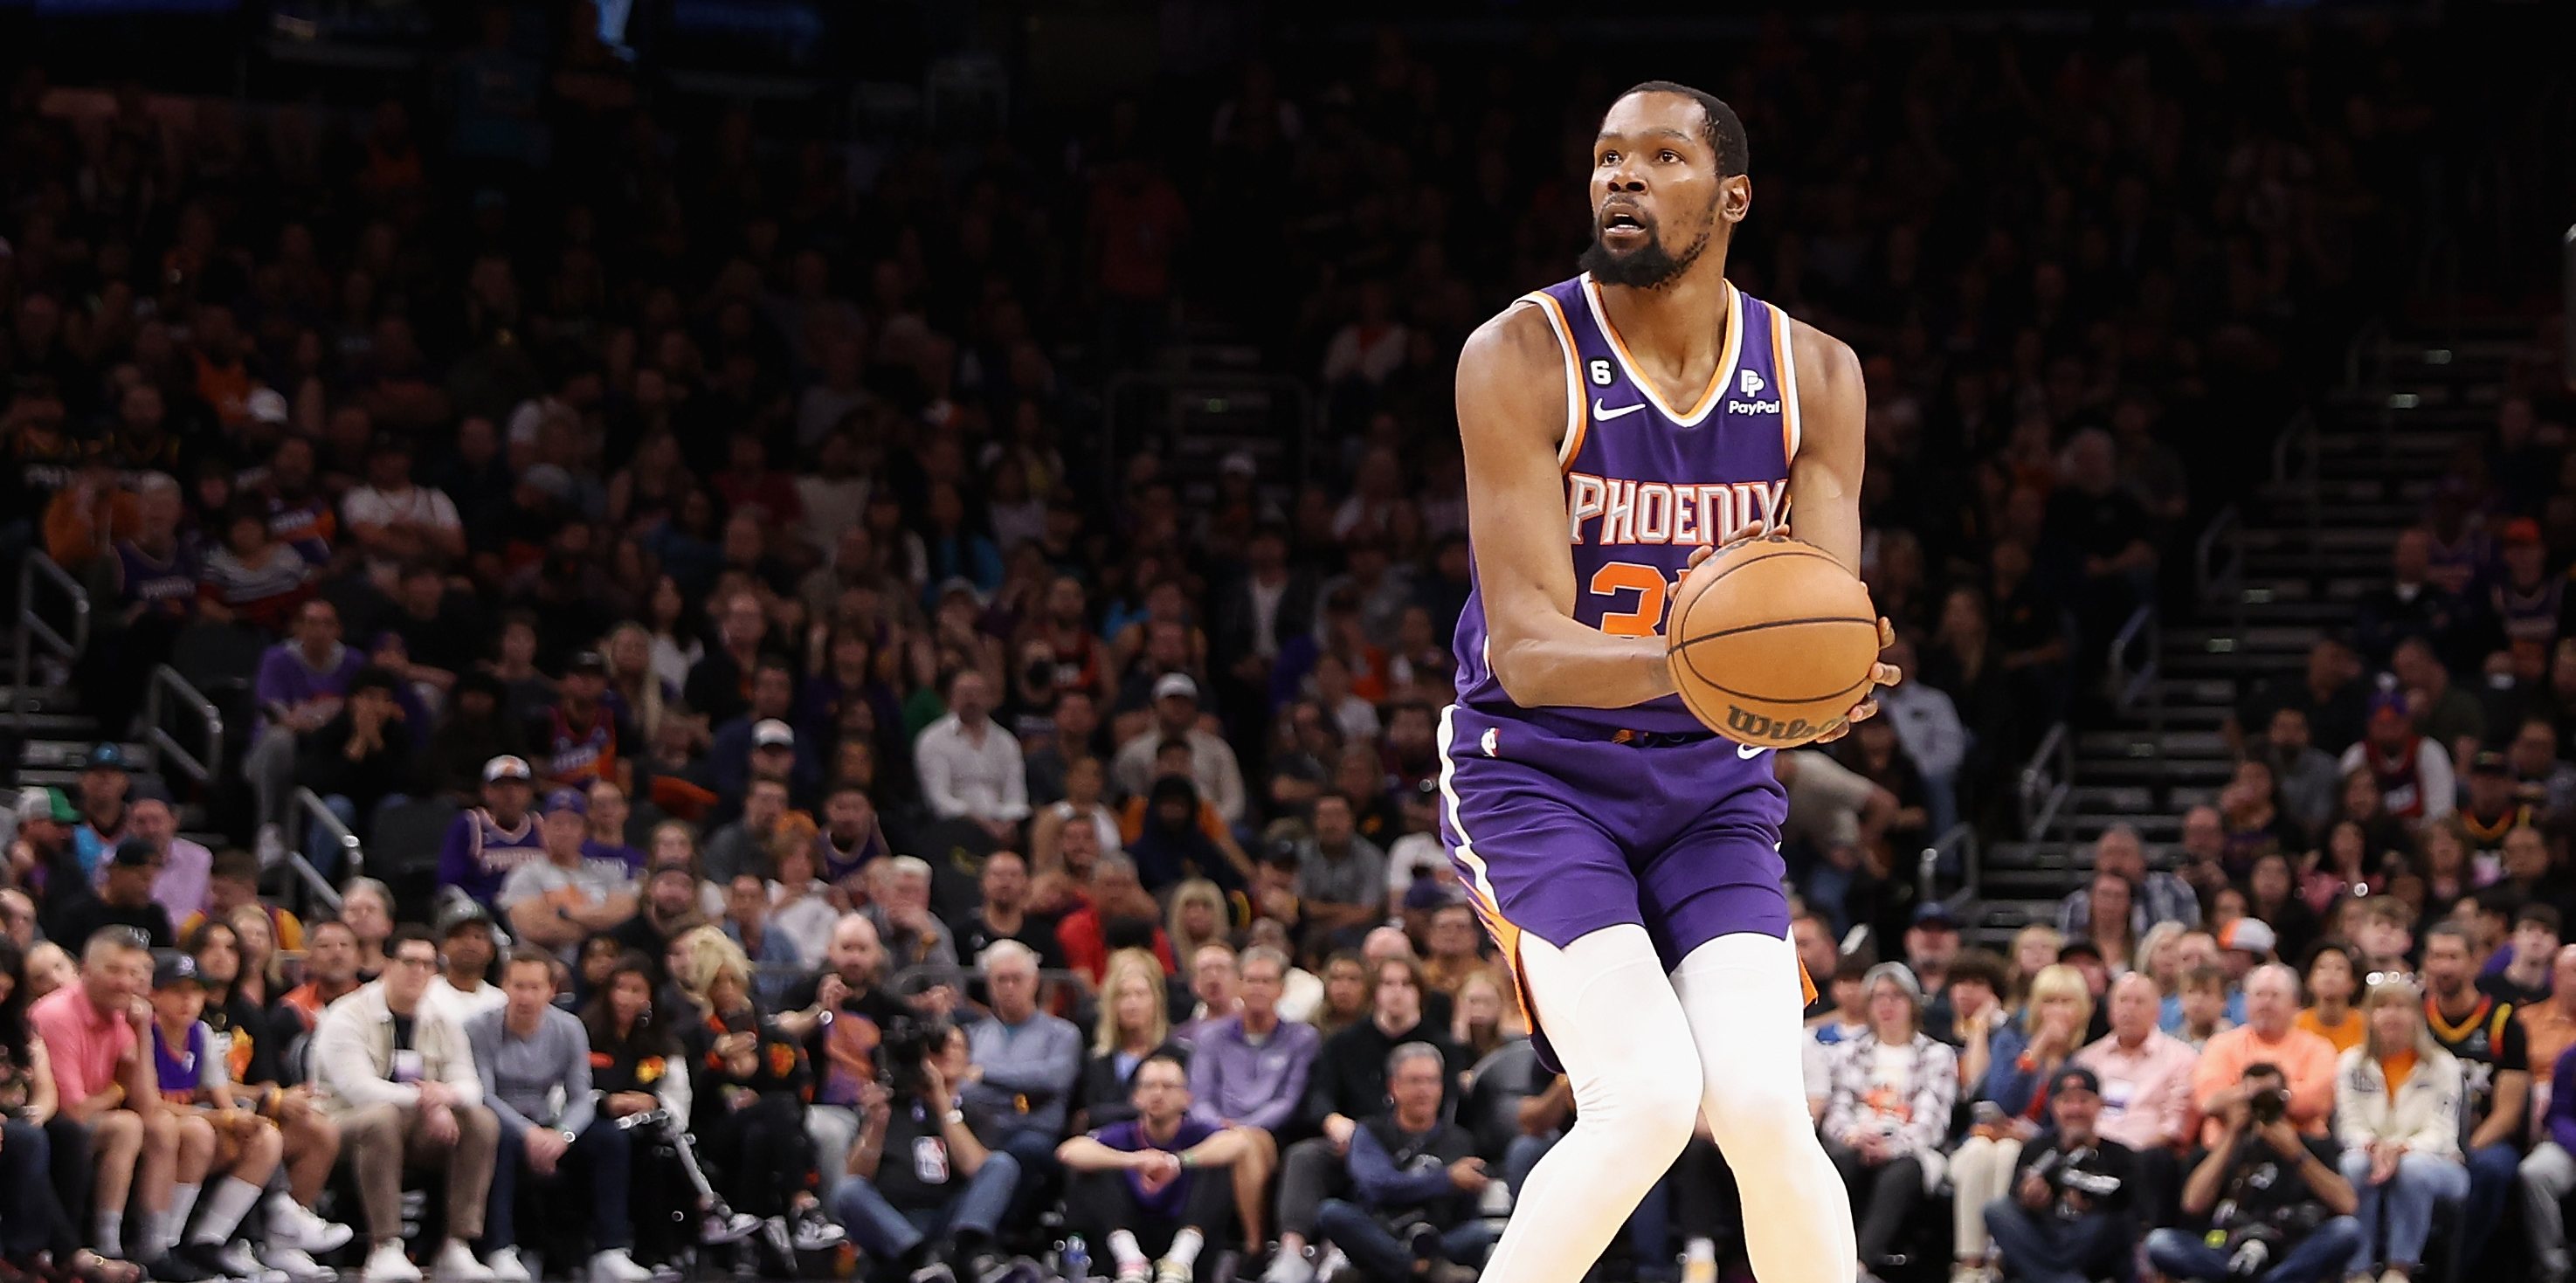 Kevin Durant trocou os Brooklyn Nets pelos Phoenix Suns após a saída de Kyrie Irving para os Dallas Mavericks. Todos ganharam menos a equipa de Doncic...